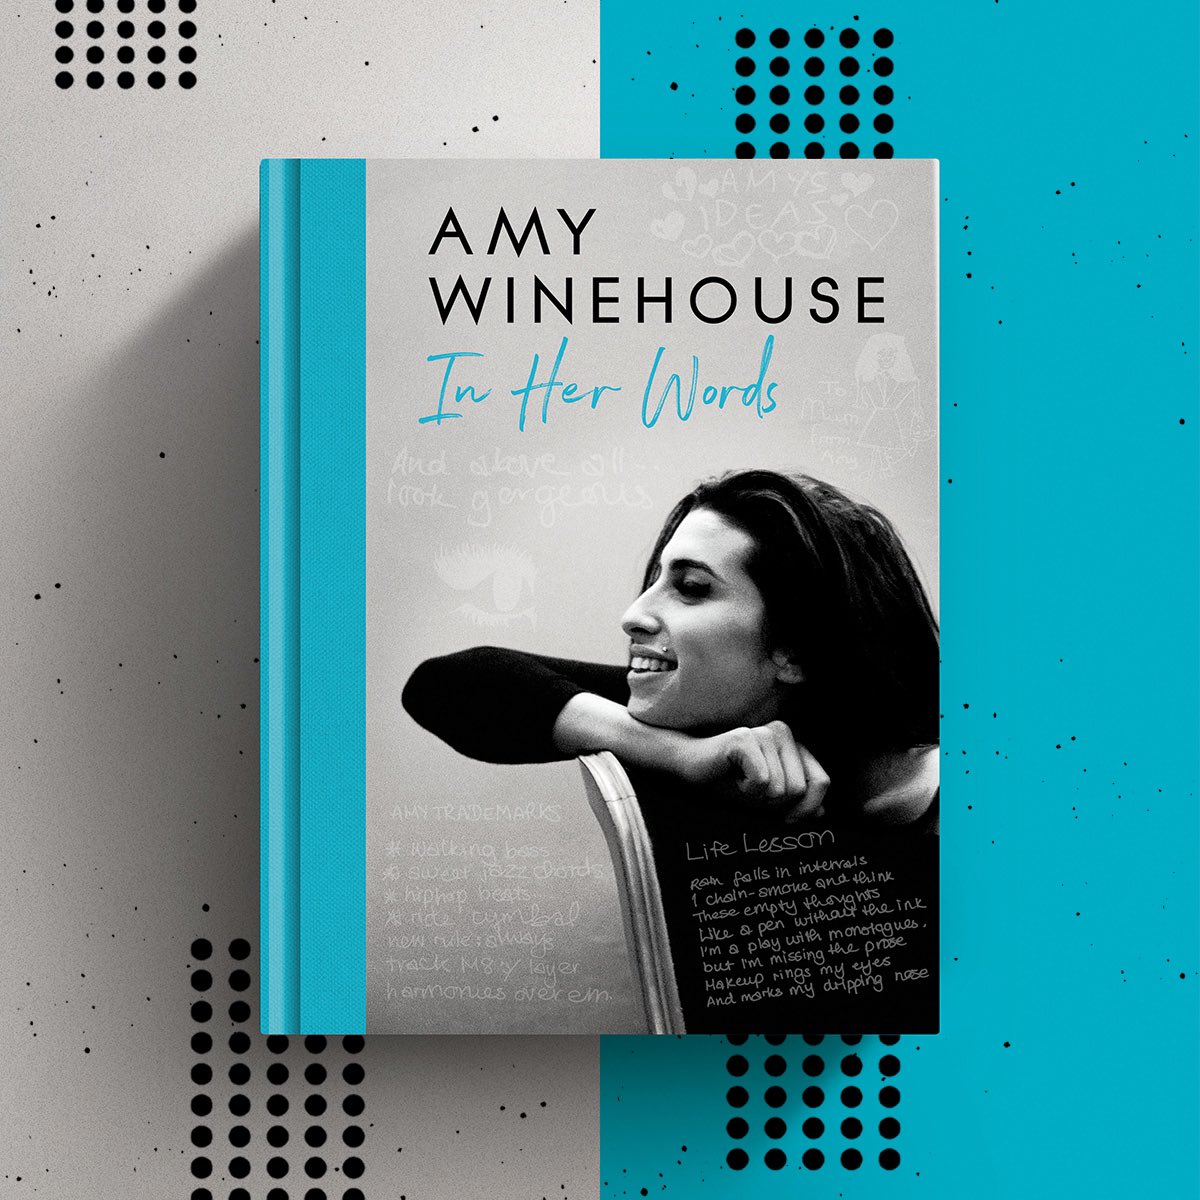 In Her Words llegará a las librerías en agosto de este año. Contará con 288 páginas a color llenas de letras y escritos que Amy Winehouse escribió en vida (Foto: Twitter/ @amywinehouse)